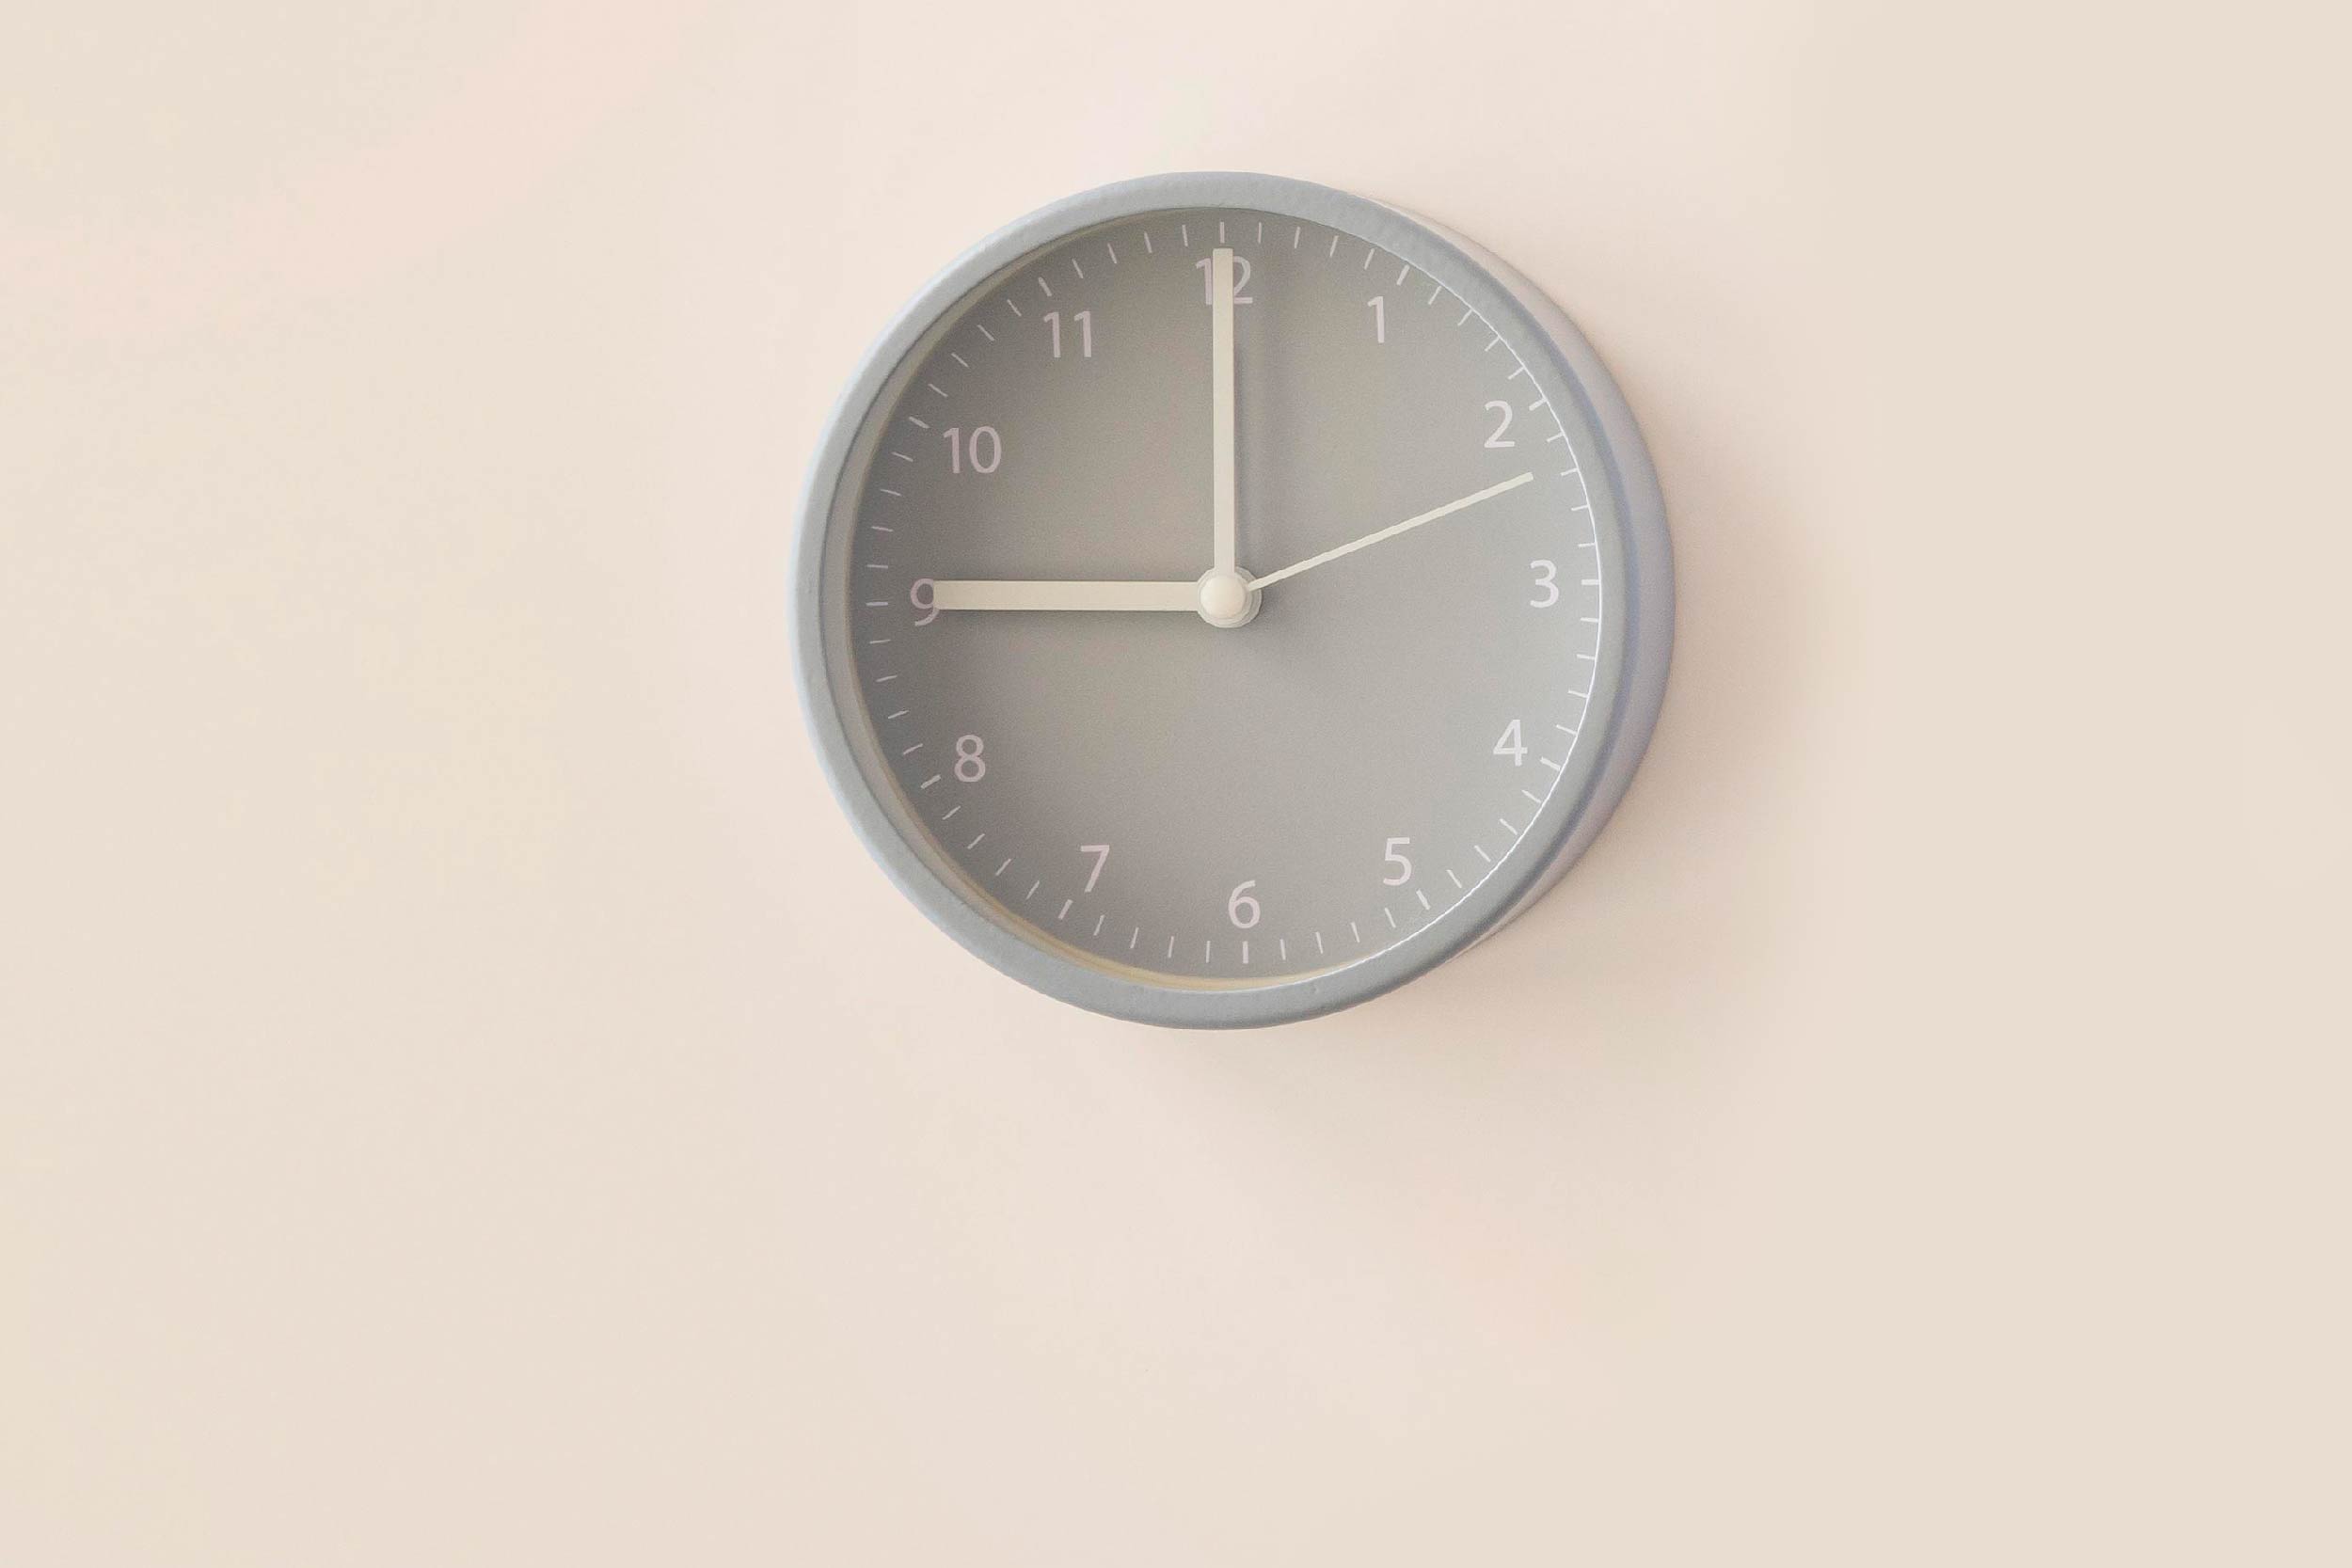 Foto de um relógio de parede cinza sobre fundo bege. O relógio marca 9 horas.